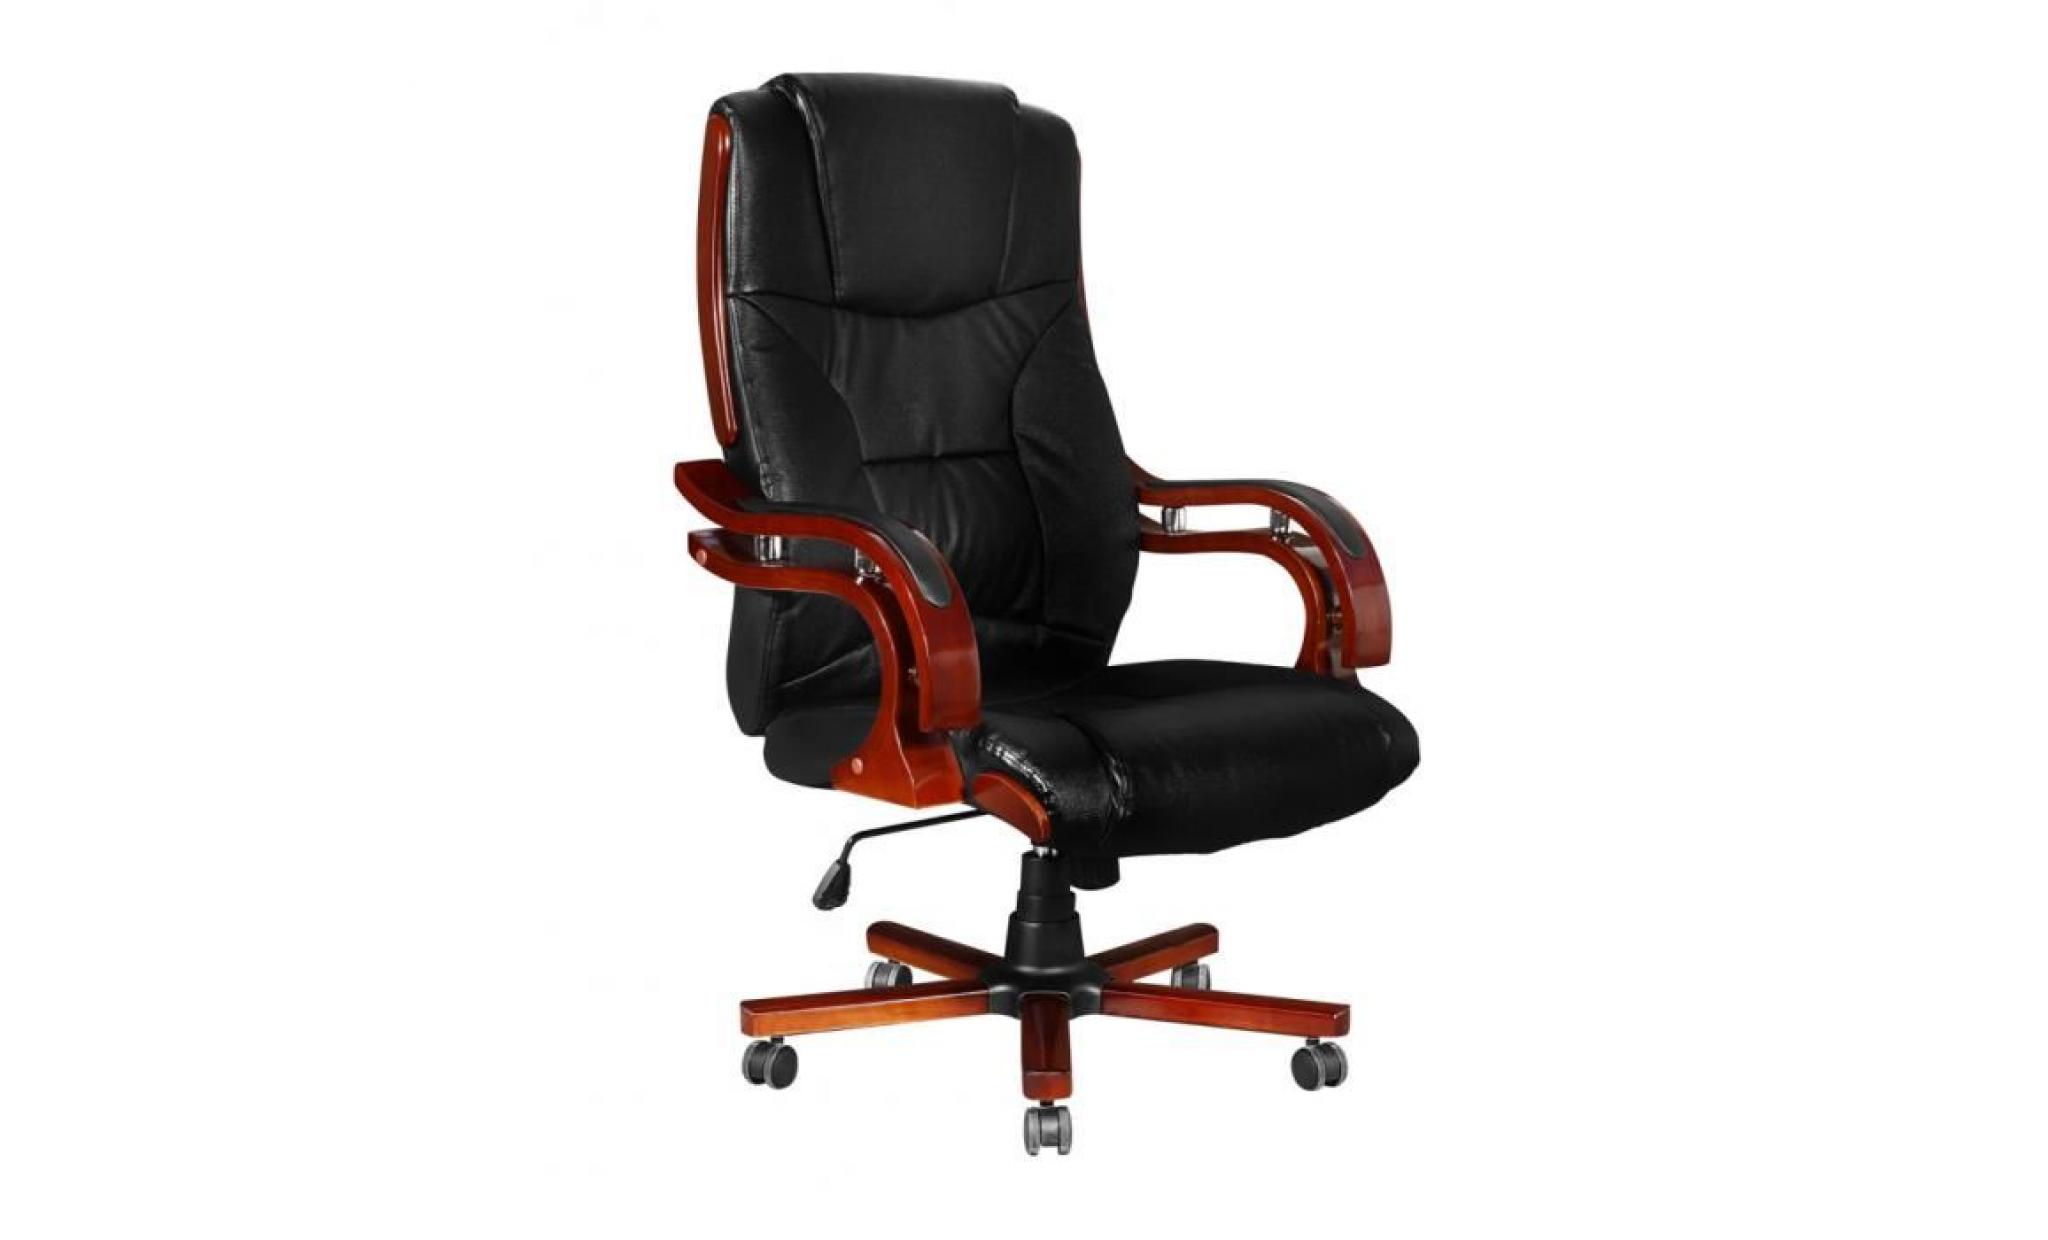 fauteuil direction chaise en cuir noir design rétro l moderne confort pour bureau réglable pratique